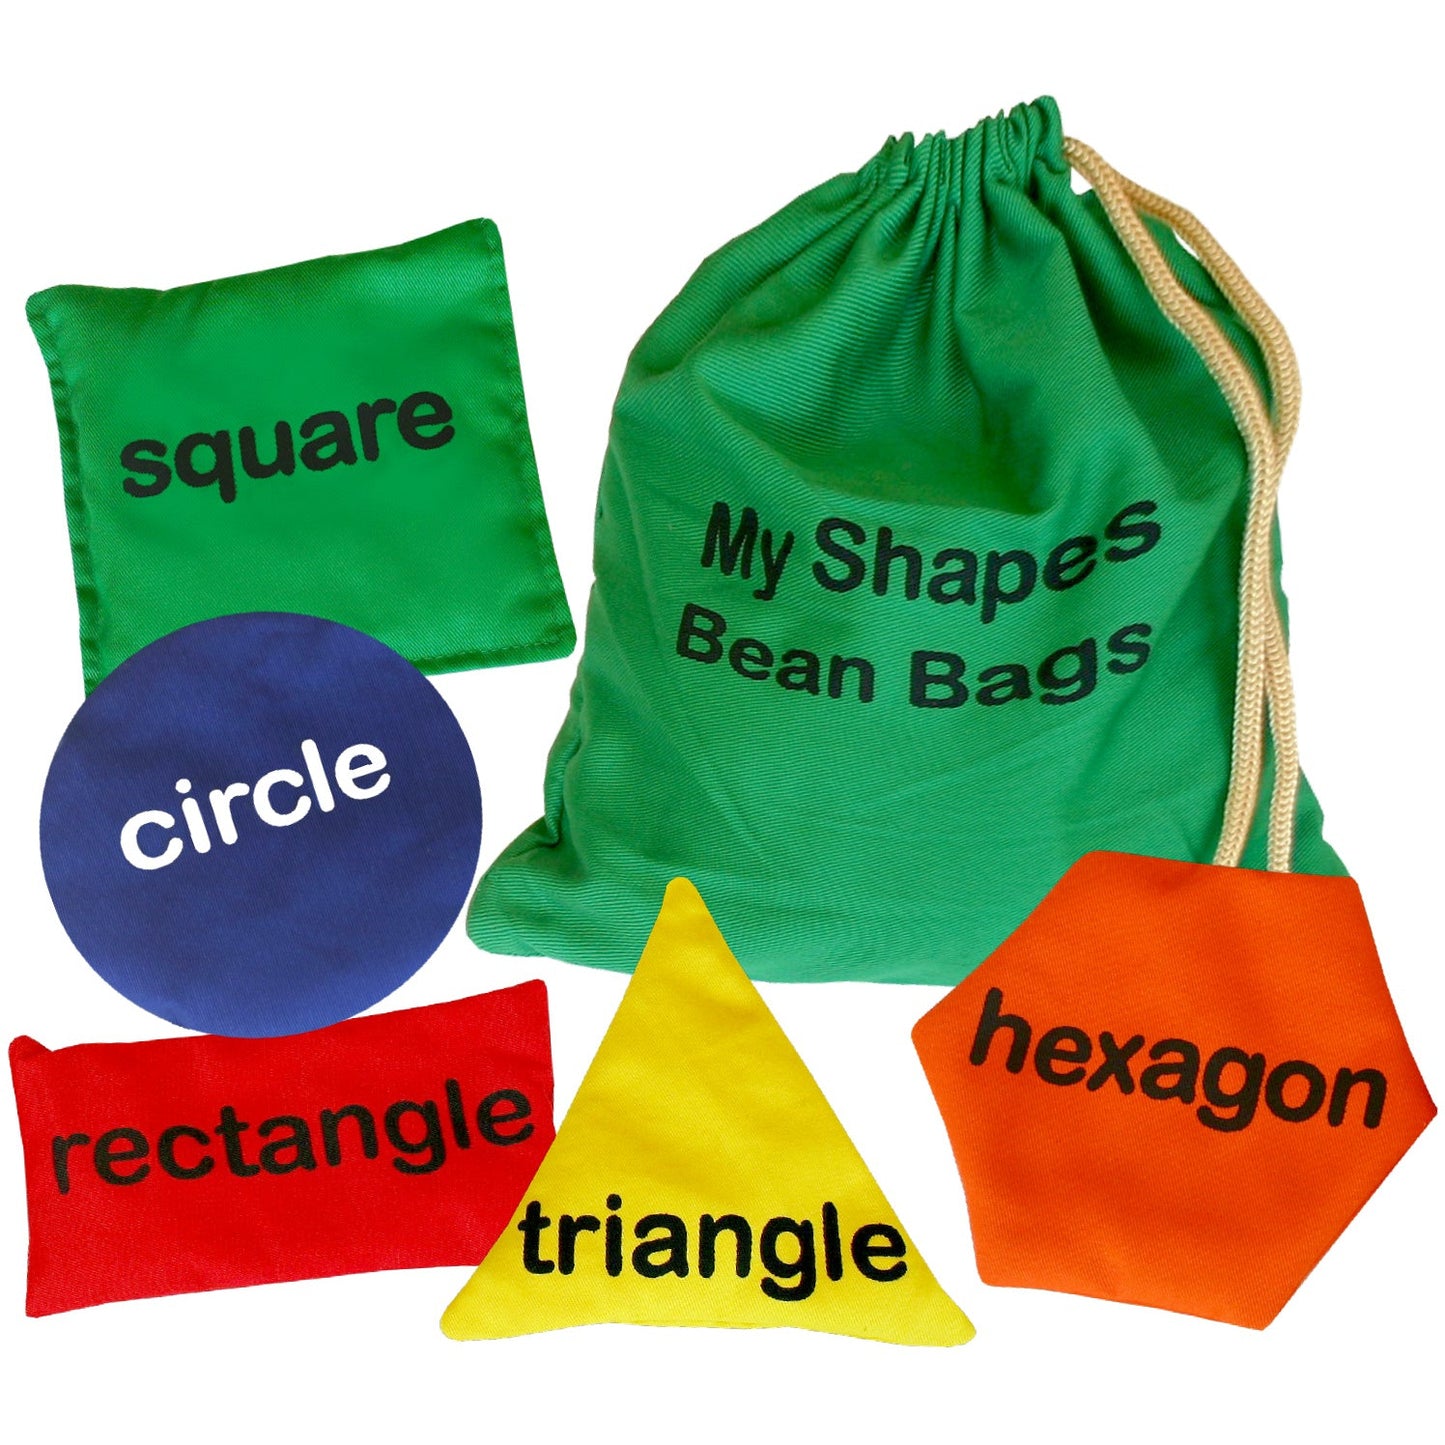 Shape Bean Bags (13cm)